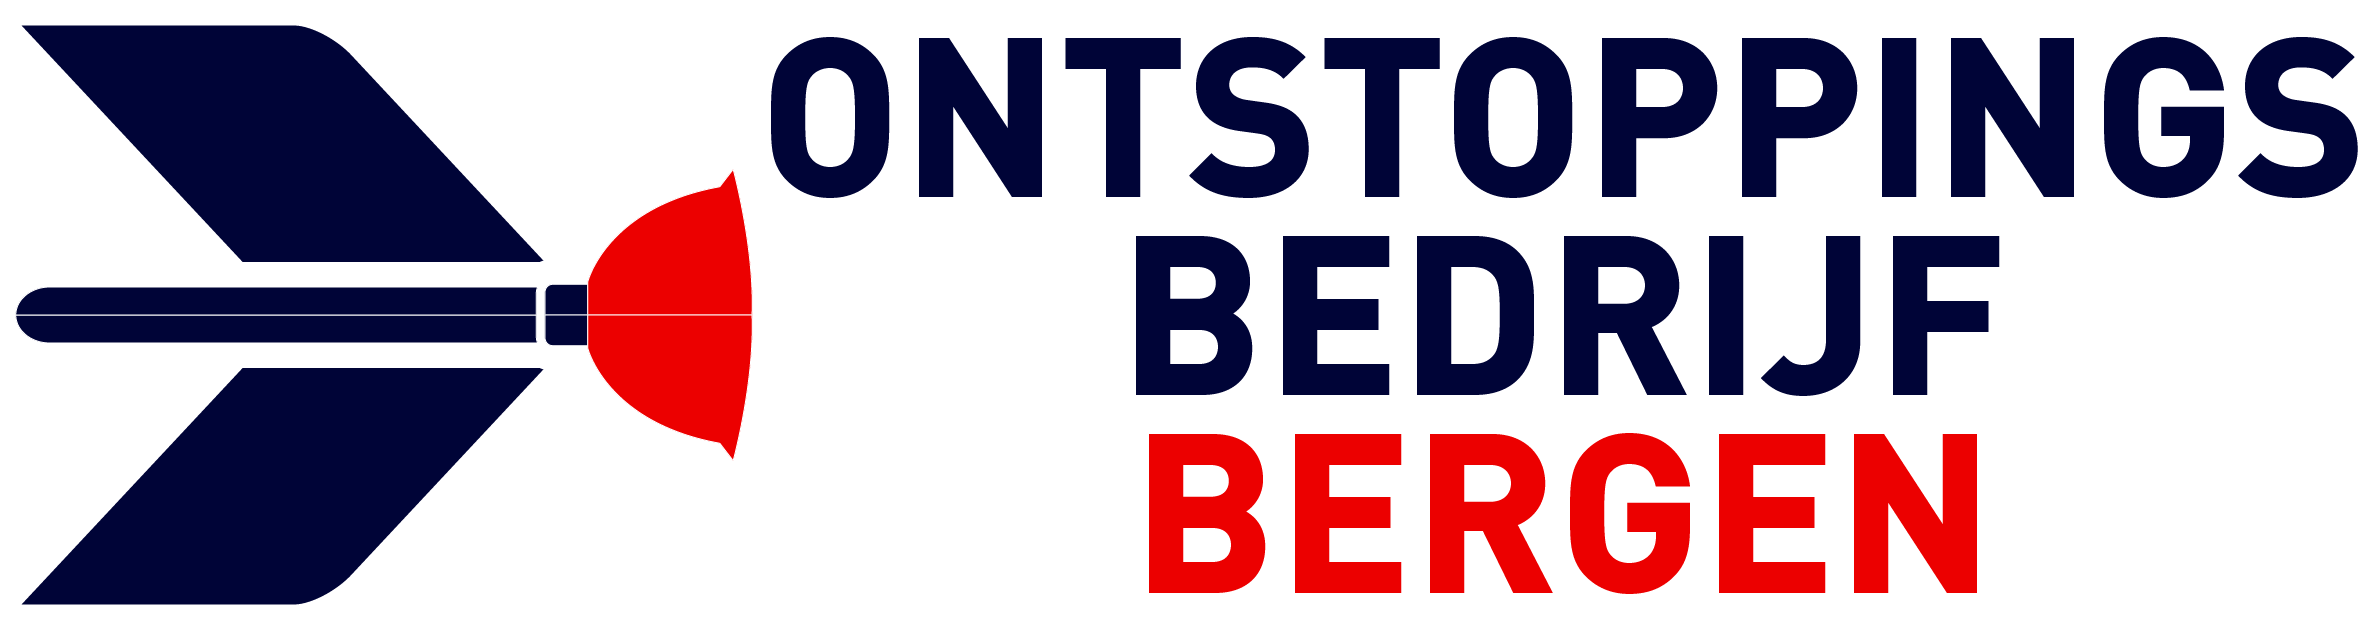 Ontstoppingsbedrijf Bergen logo